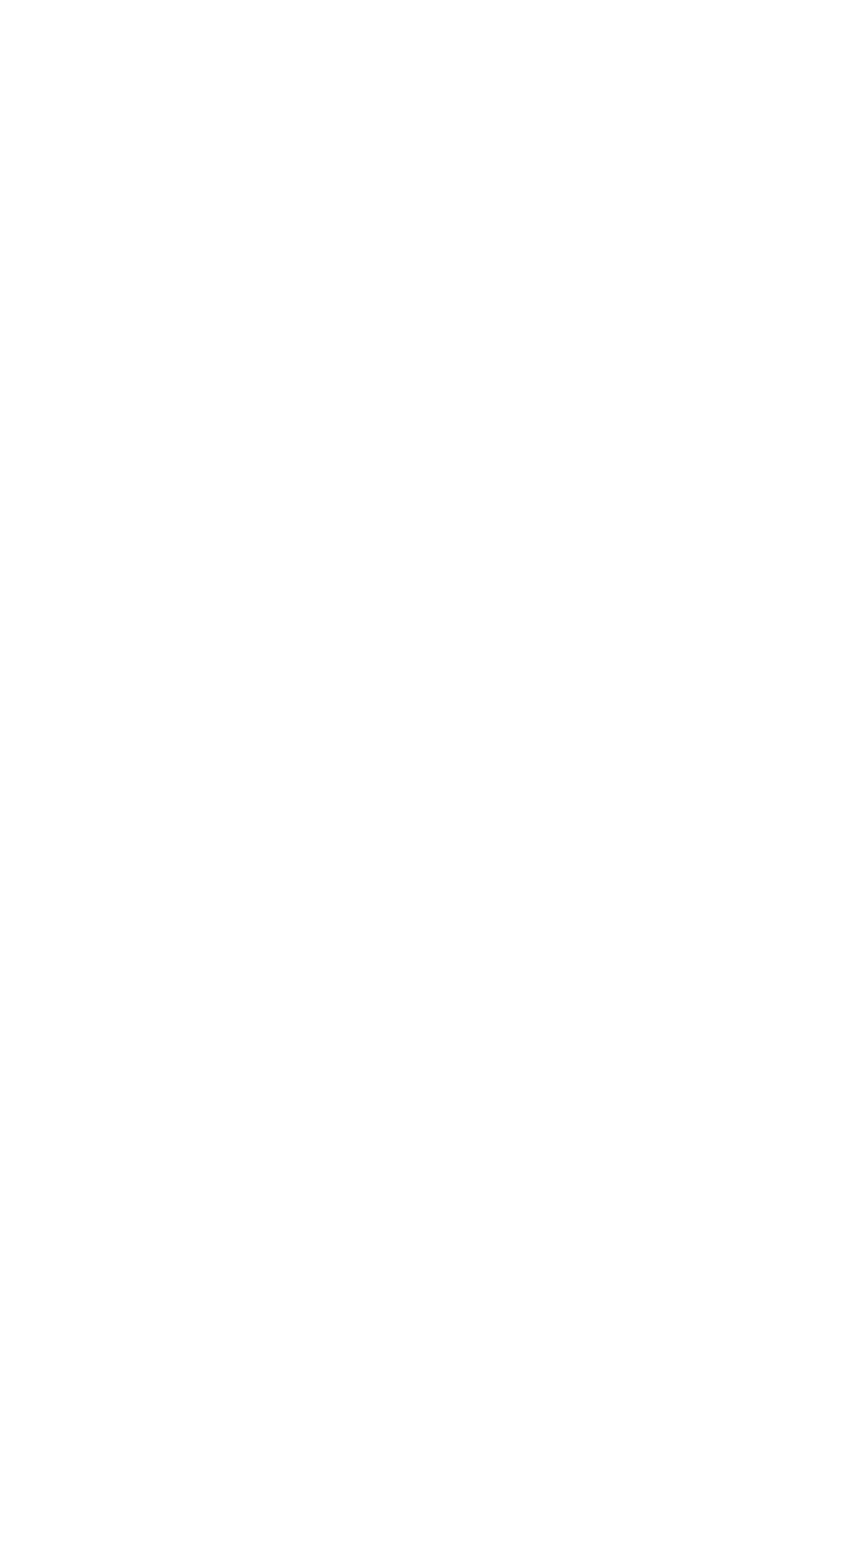 Kingdom Holding logo for dark backgrounds (transparent PNG)